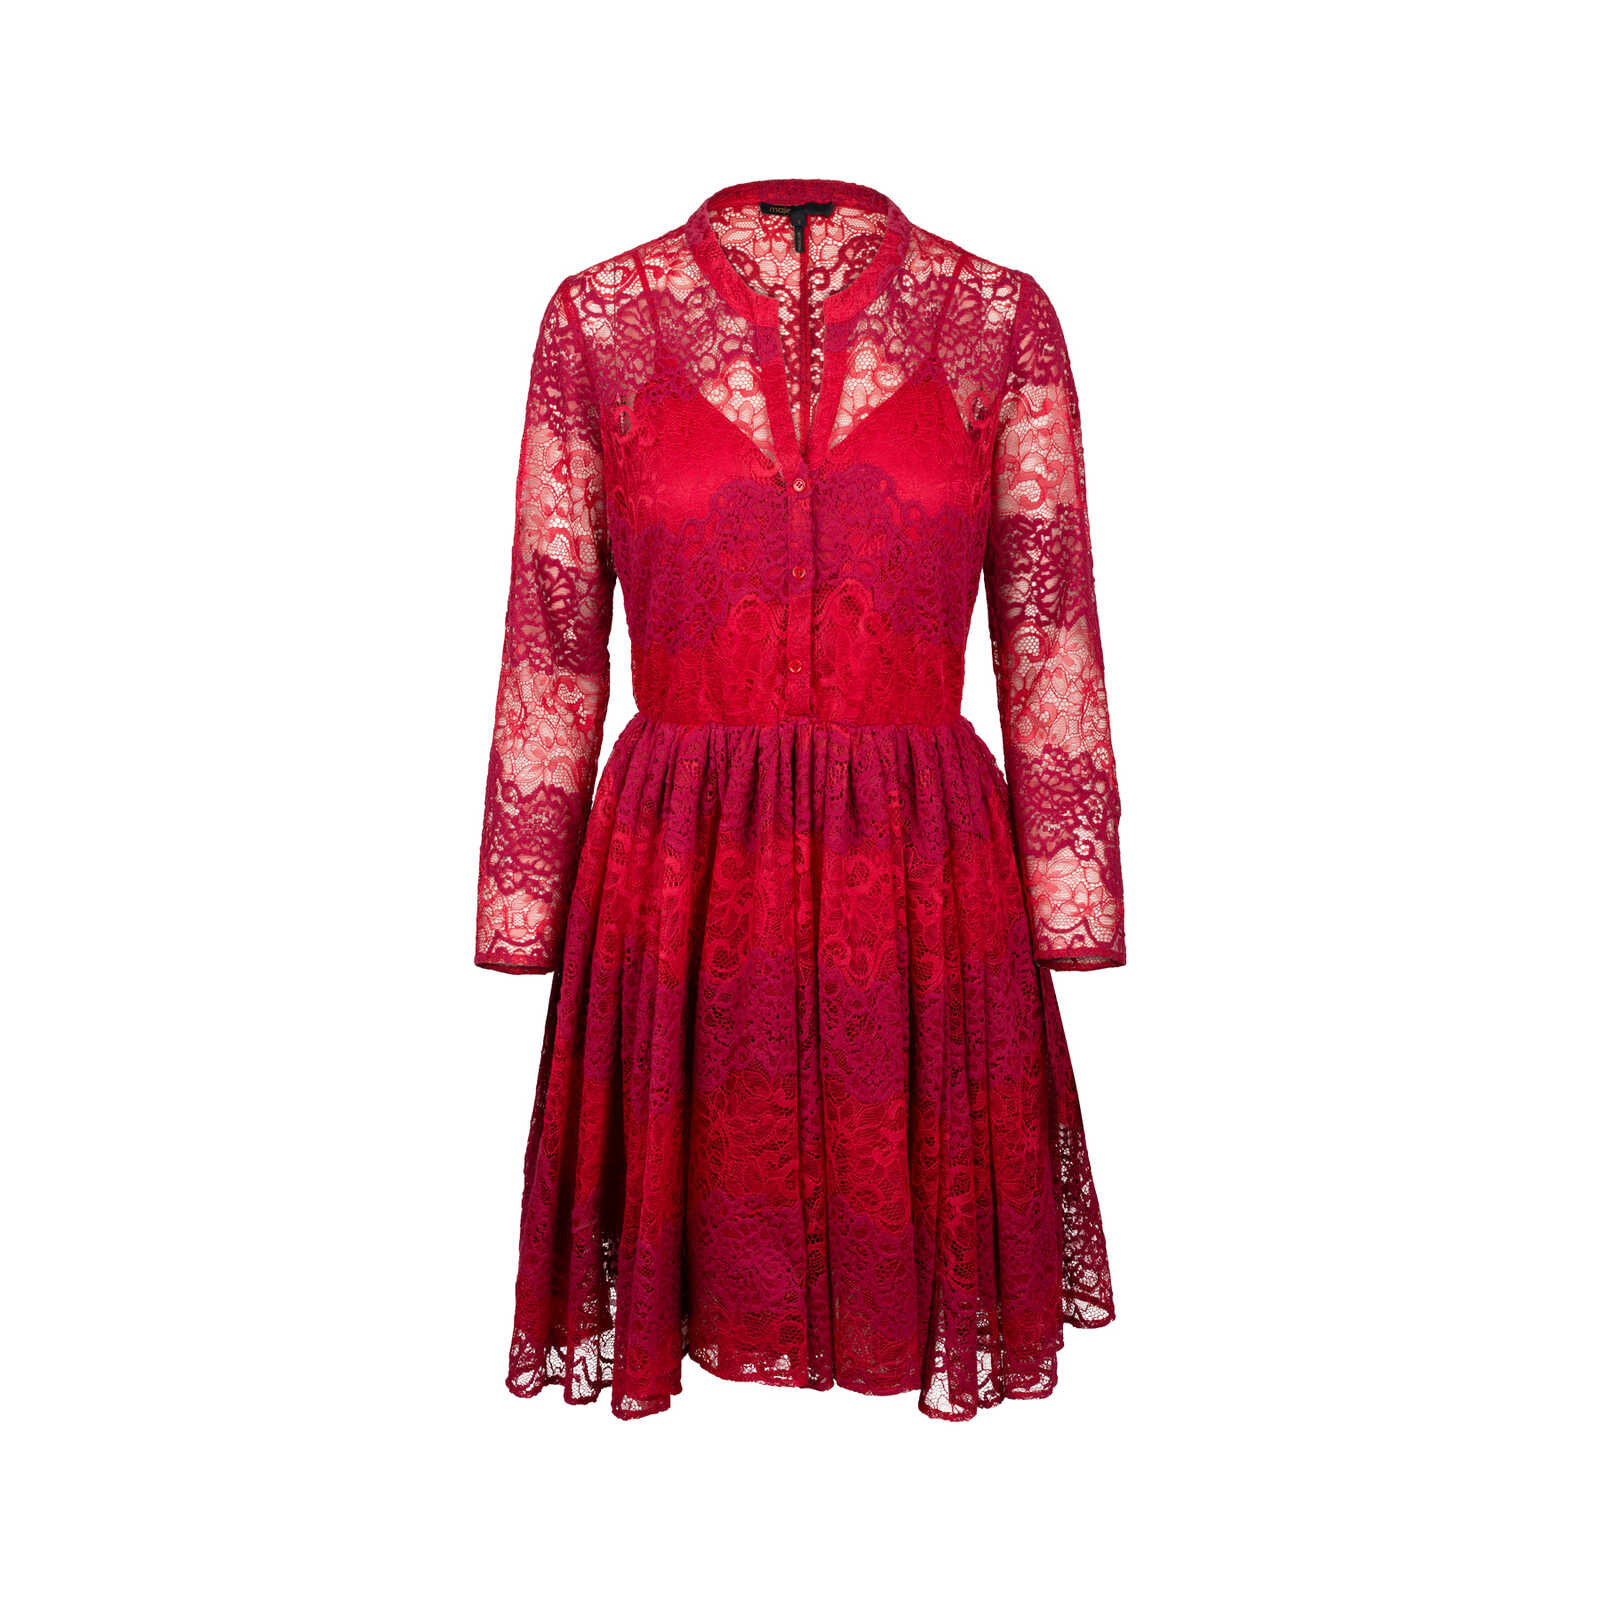 Maje Rayela Lace Dress in Red.jpg